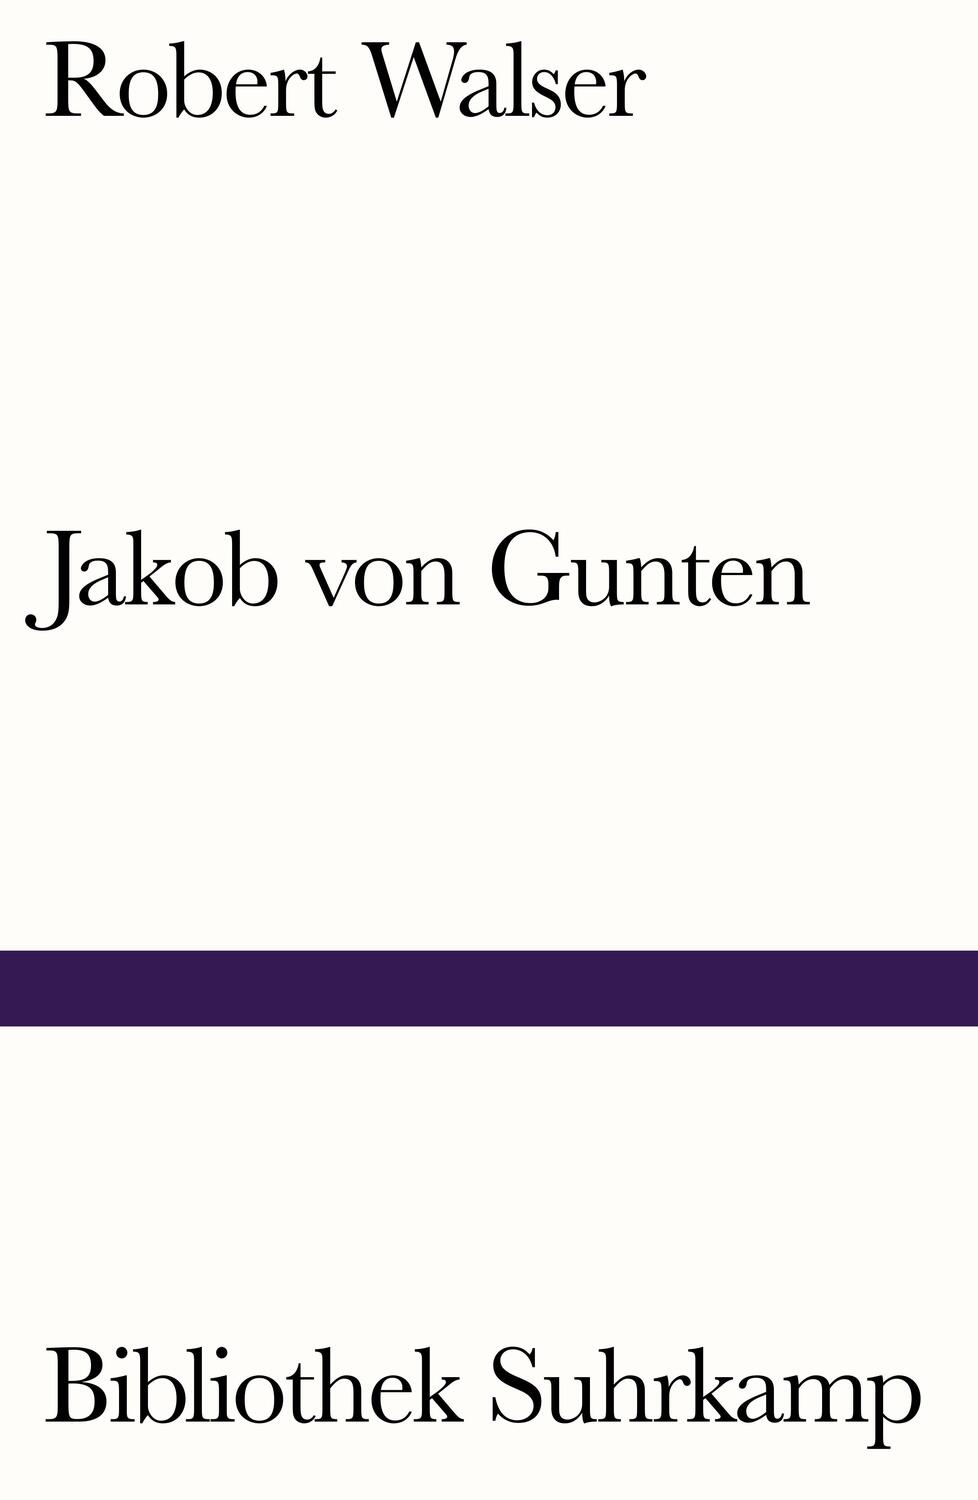 Jakob von Gunten - Walser, Robert